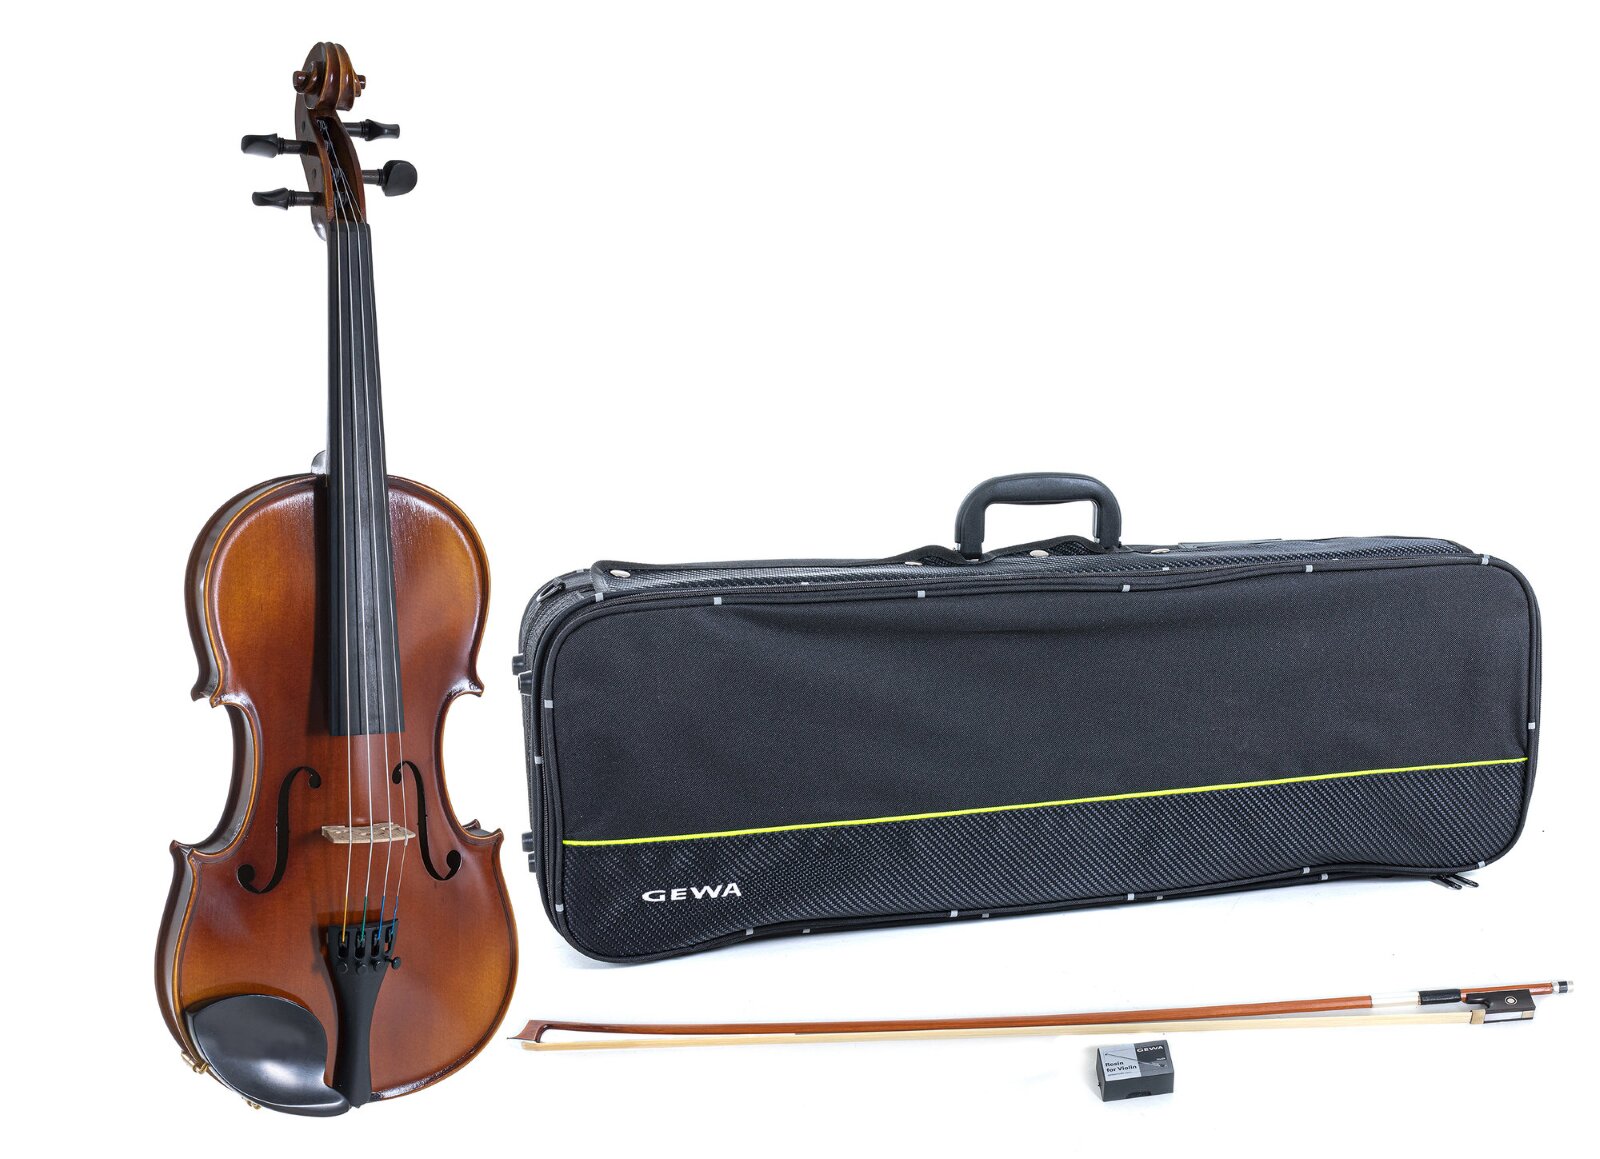 Gewa Ensemble Allegro violin 1/2 (Violin, case, bow, chin rest and rosin) : photo 1